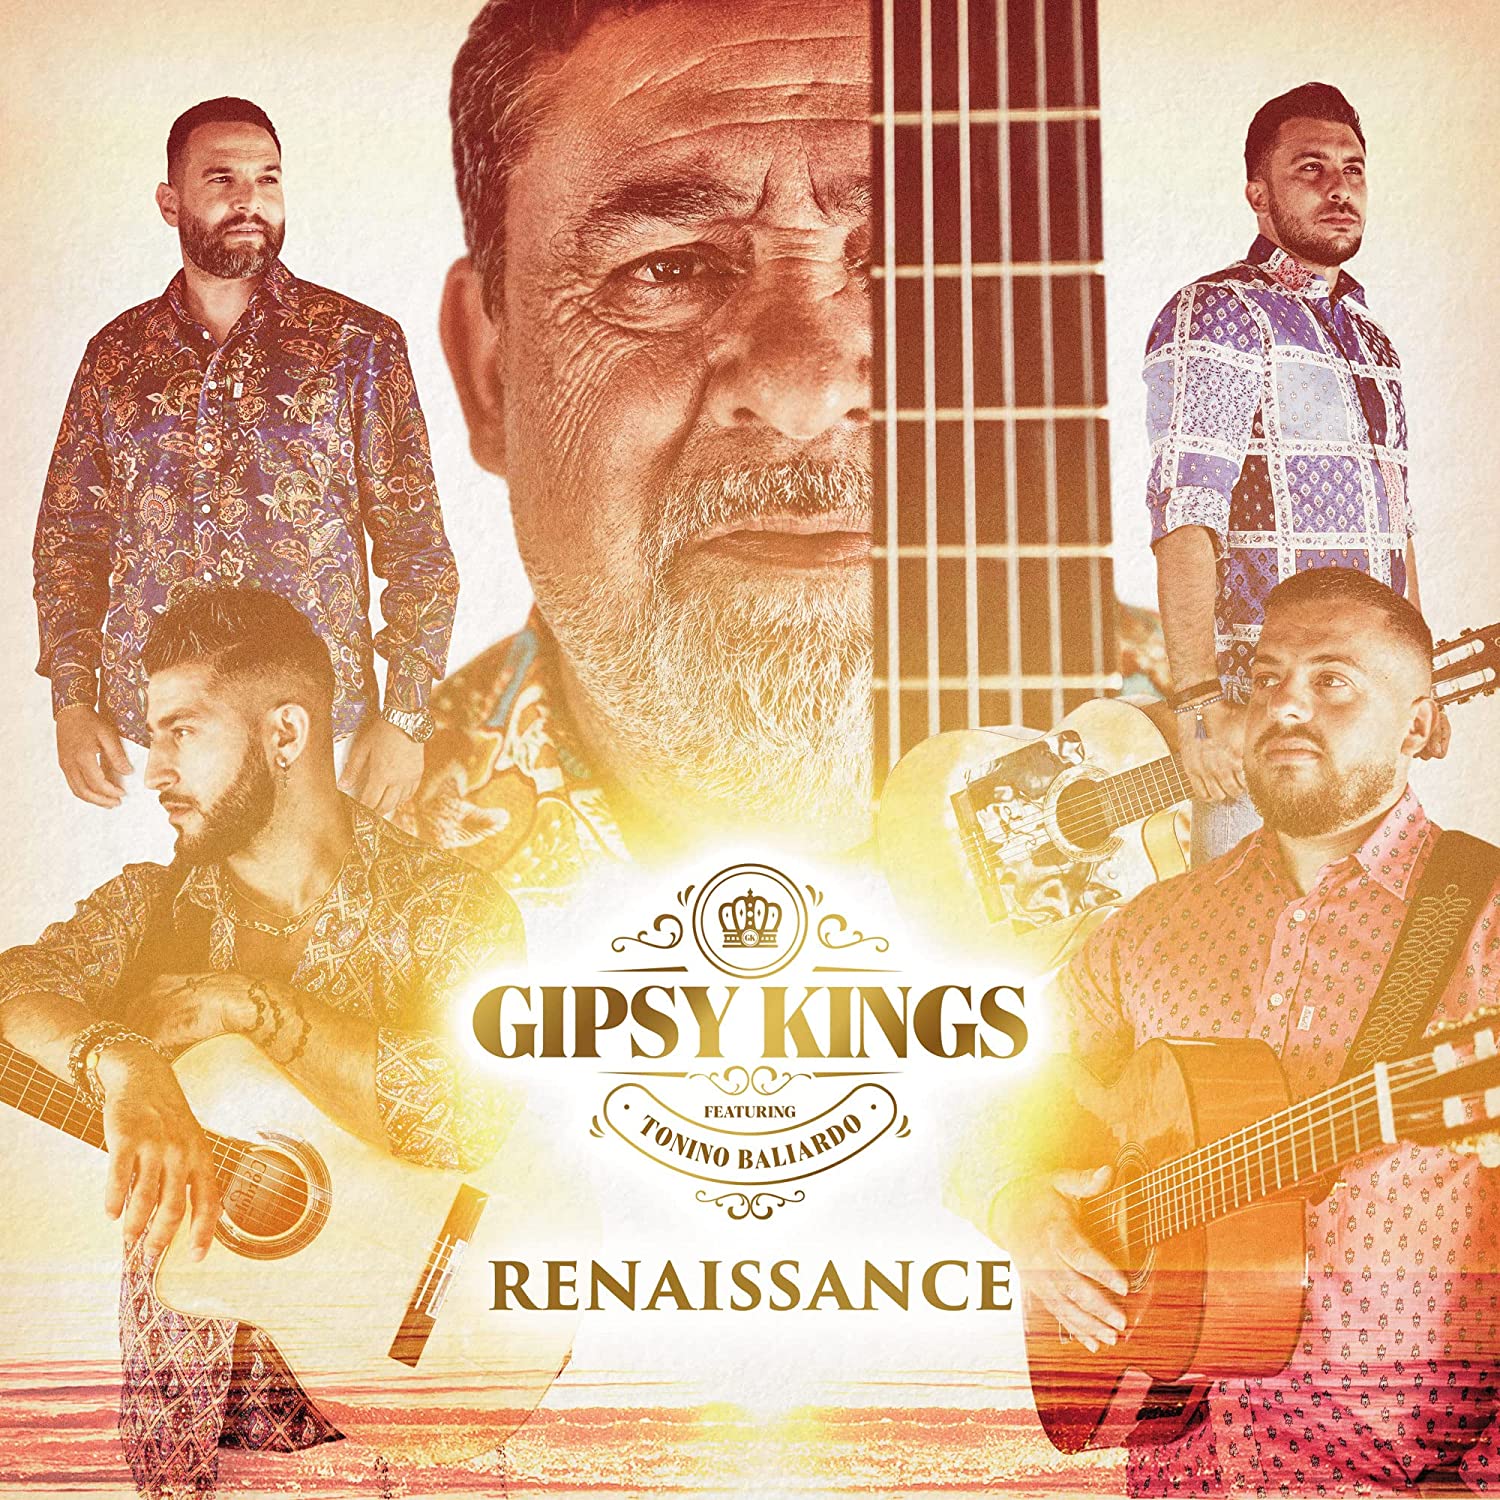 Gipsy Kings ‘Renaissance’ album artwork